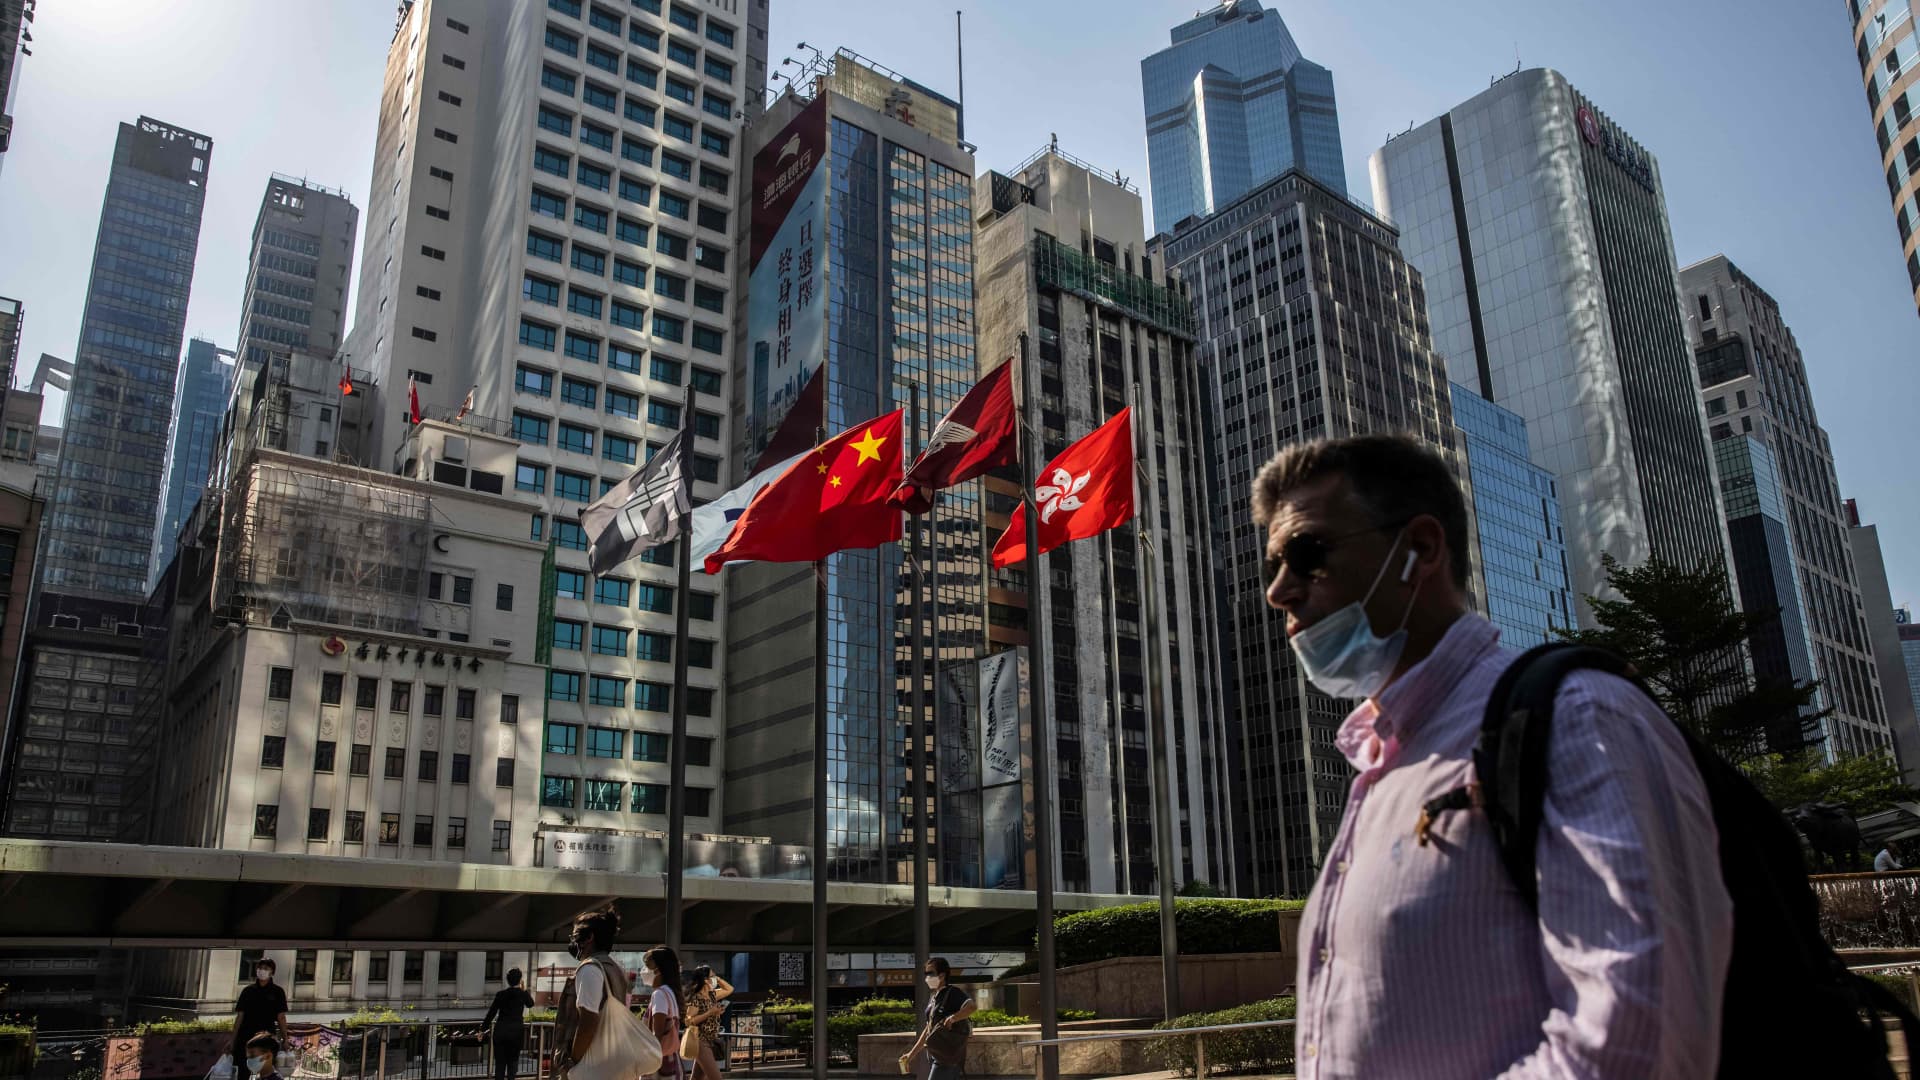 प्रमुख बैंक हांगकांग की अर्थव्यवस्था और चीन के विकास की संभावनाओं पर आशावादी हैं